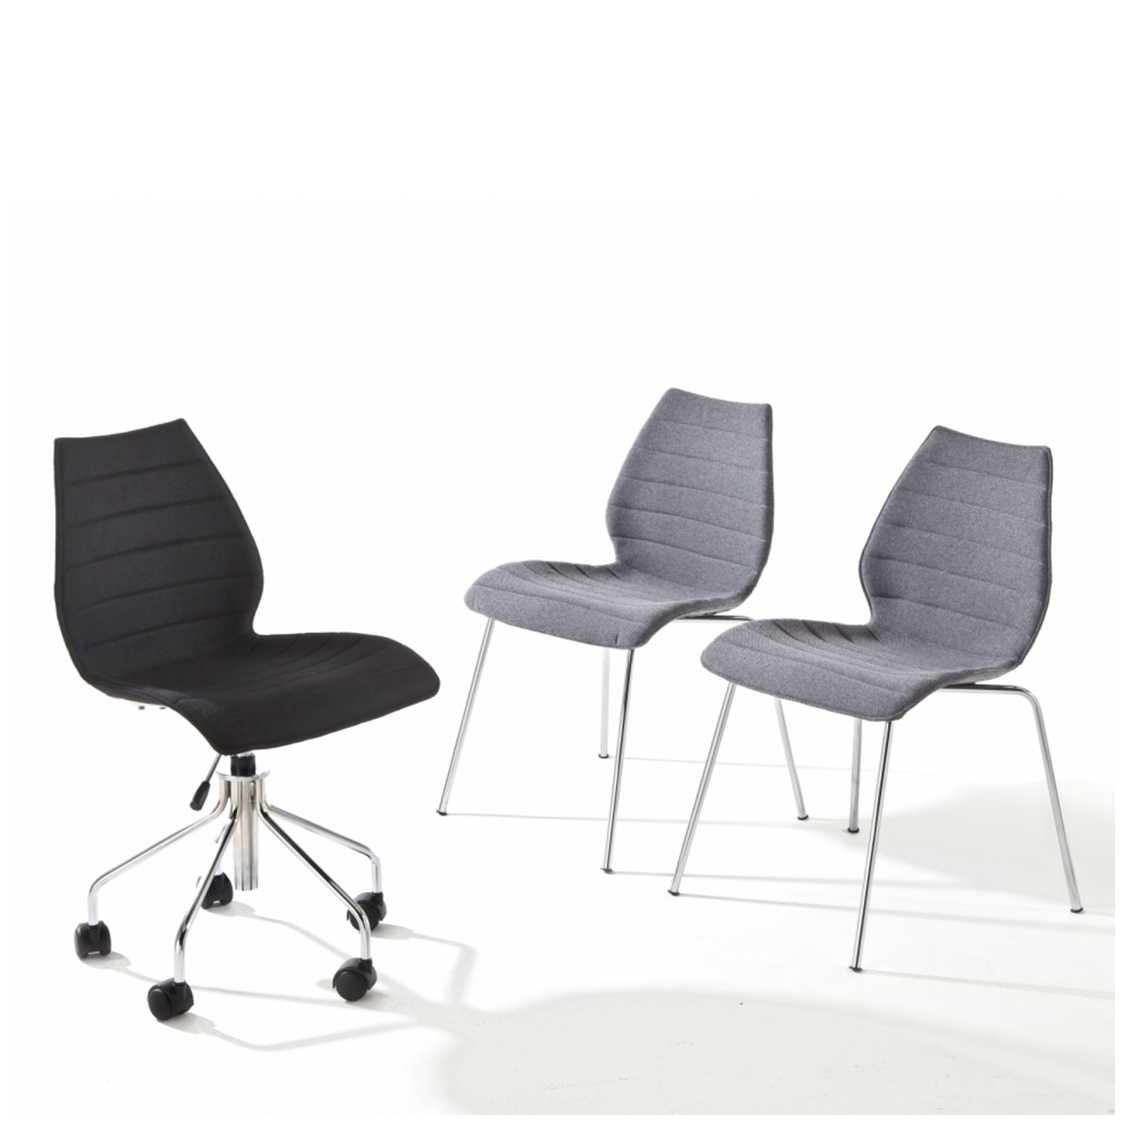 https://www.fundesign.nl/media/catalog/product/k/a/kartell-maui-soft-stoel_1_1.jpg